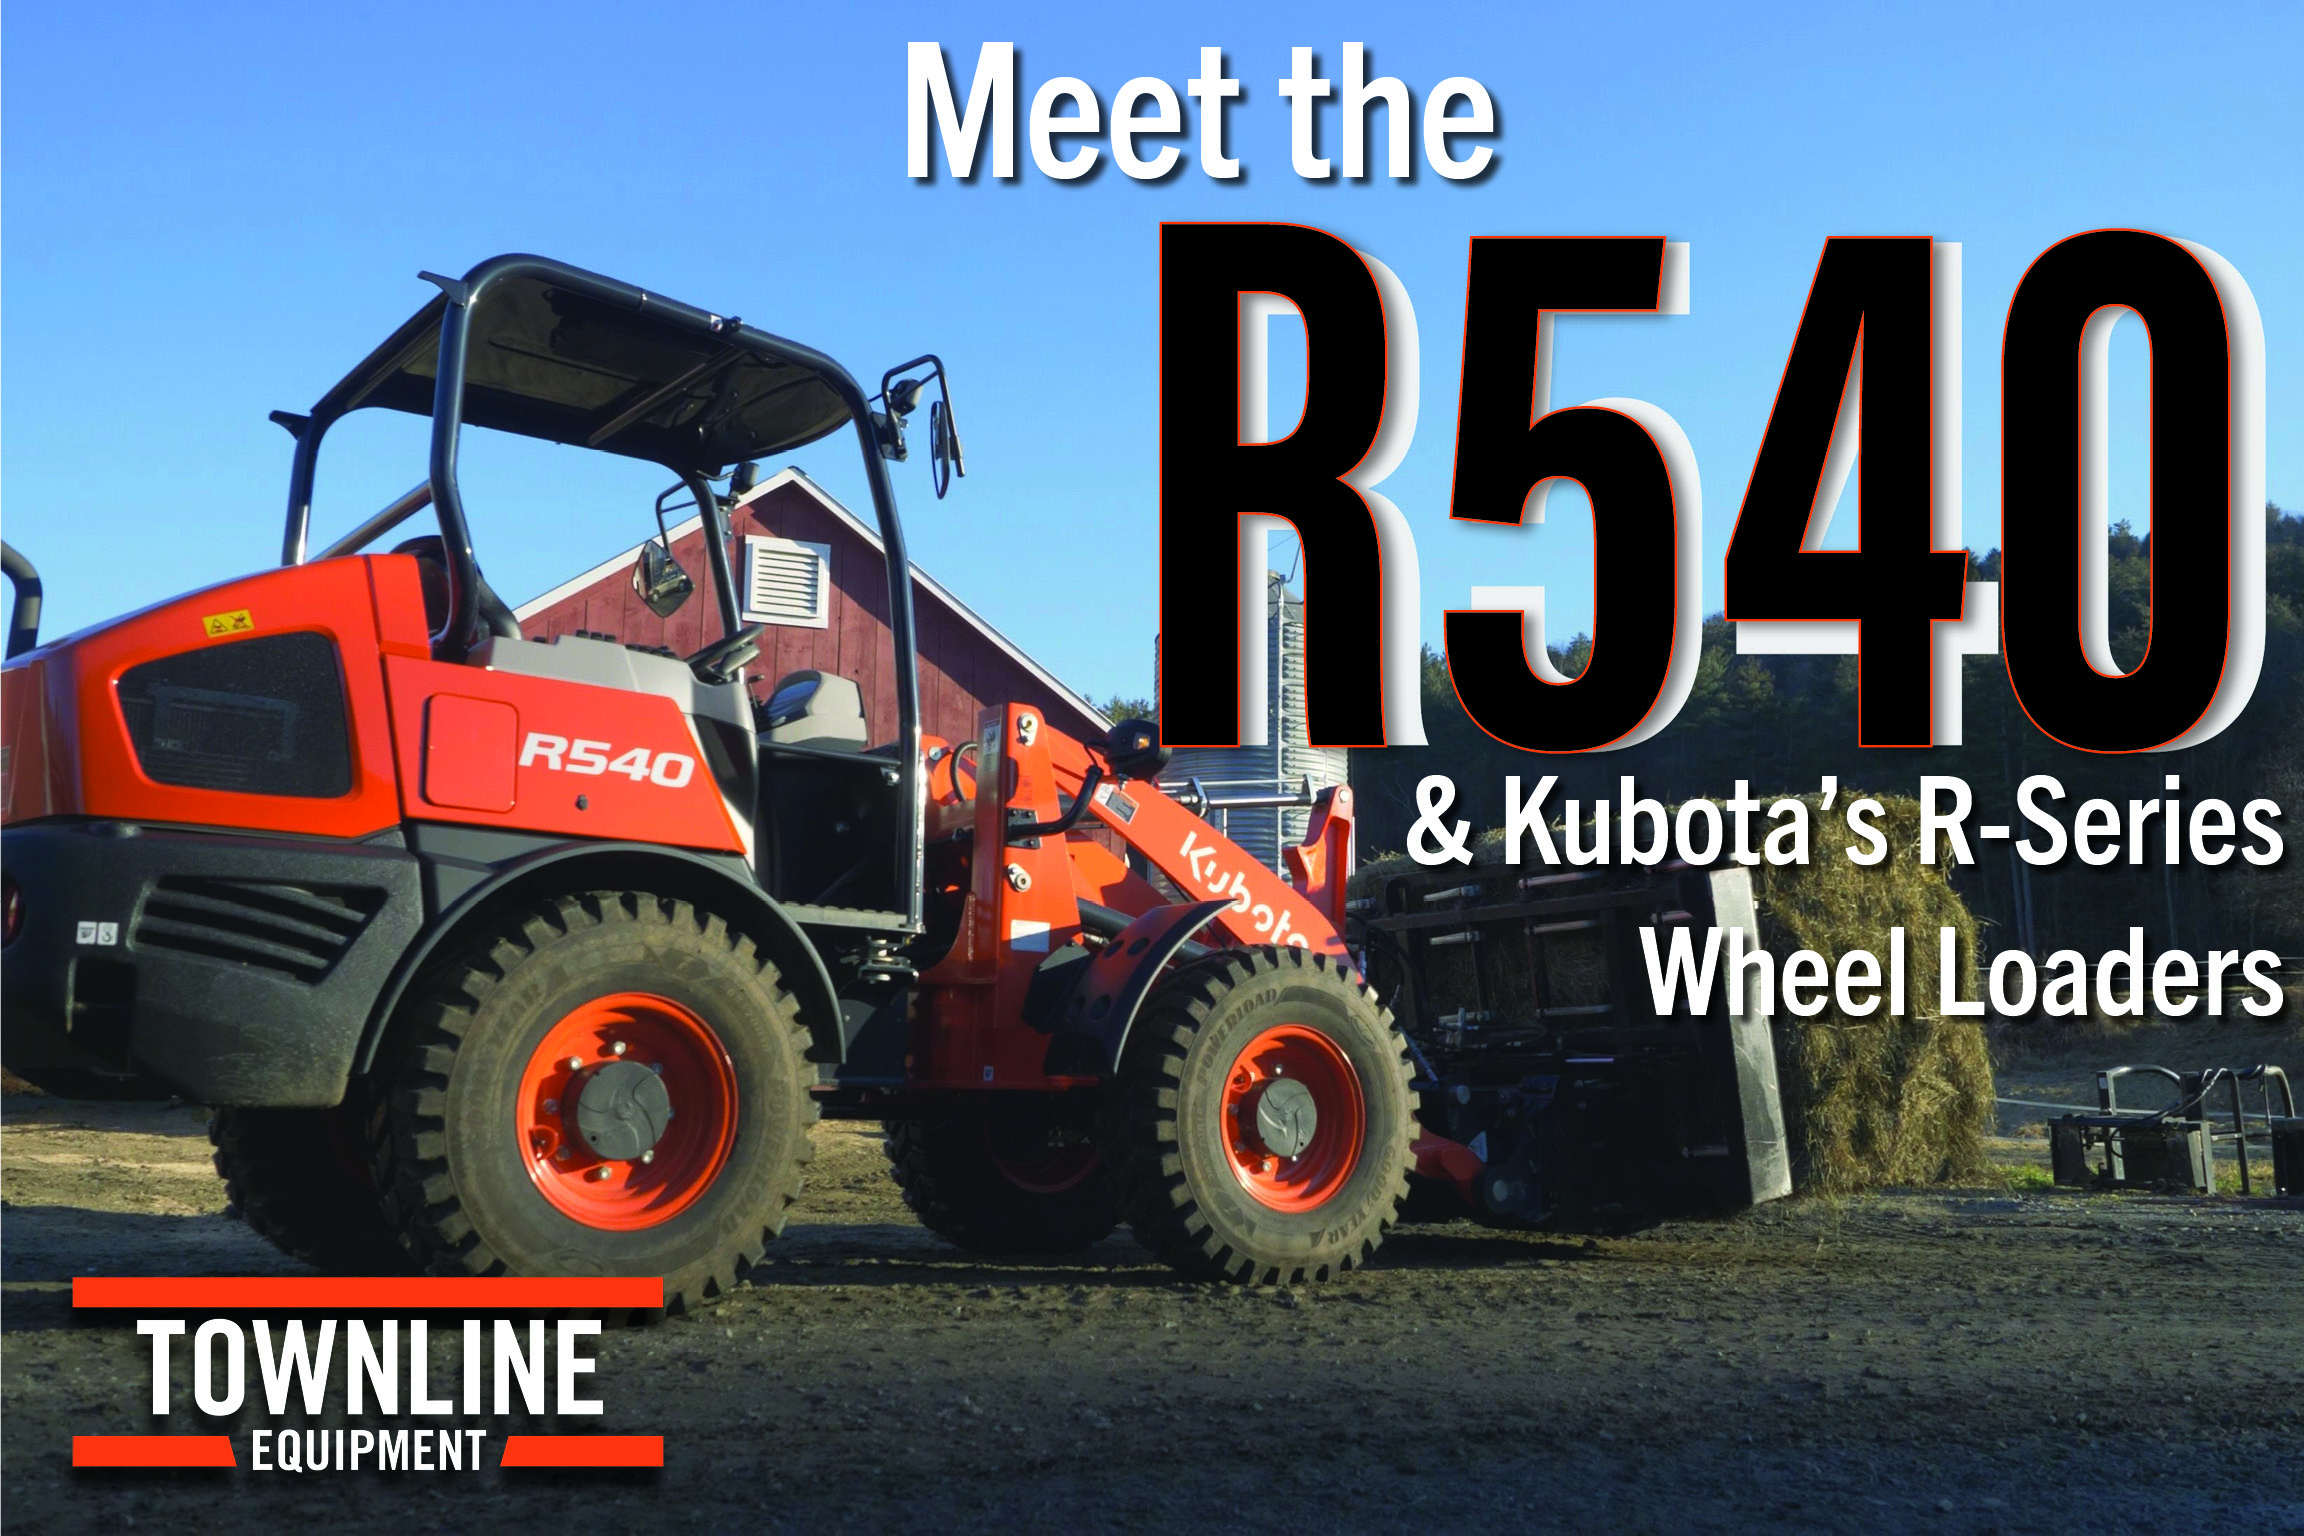 Meet the Kubota R540 & R-Series Wheel Loaders